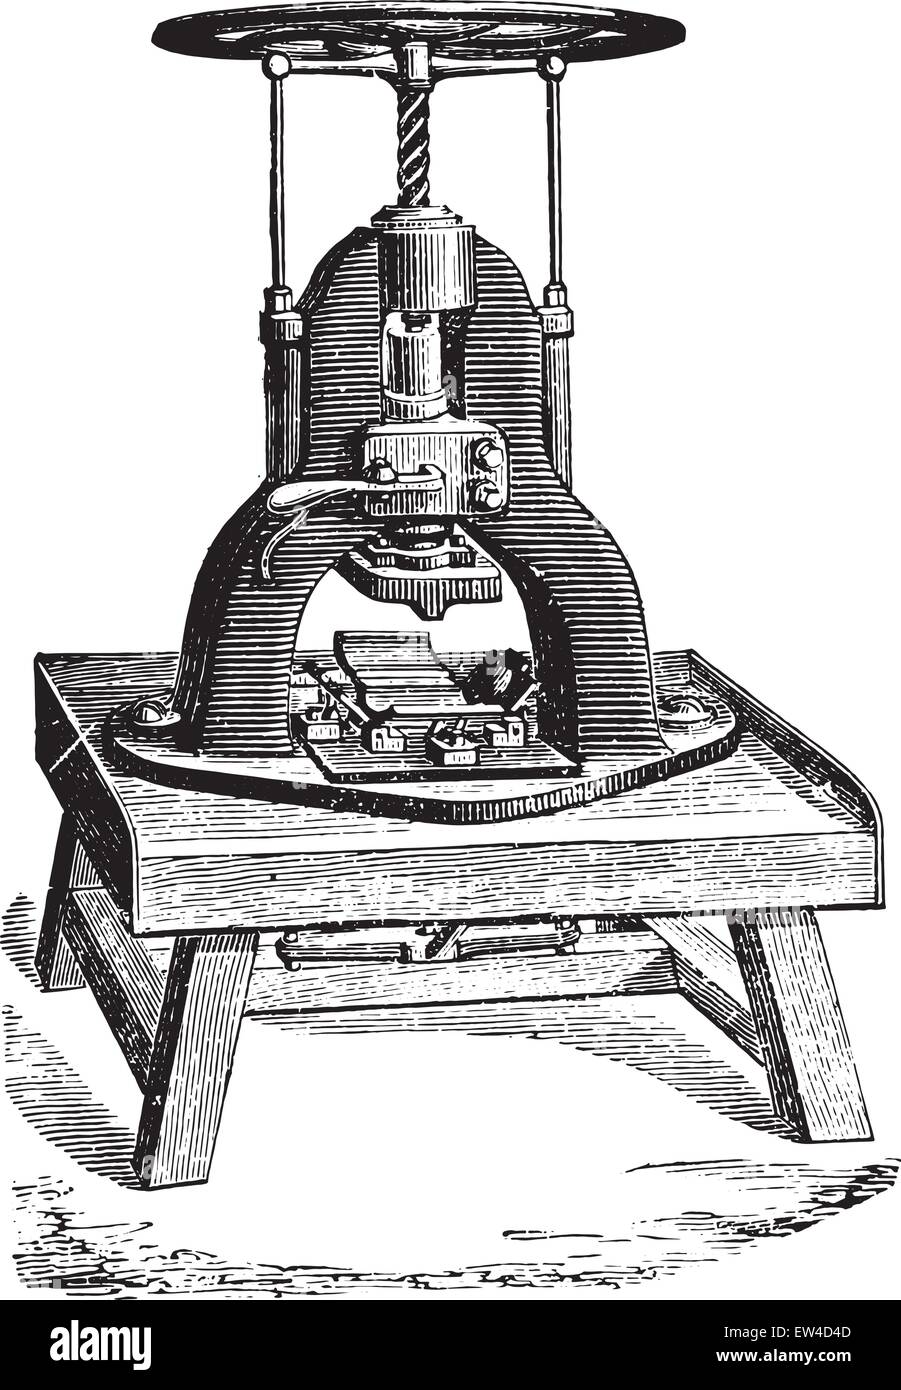 Barres de savon machine d'estampage, vintage engraved illustration.  Encyclopédie industrielle E.-O. Lami - 1875 Image Vectorielle Stock - Alamy